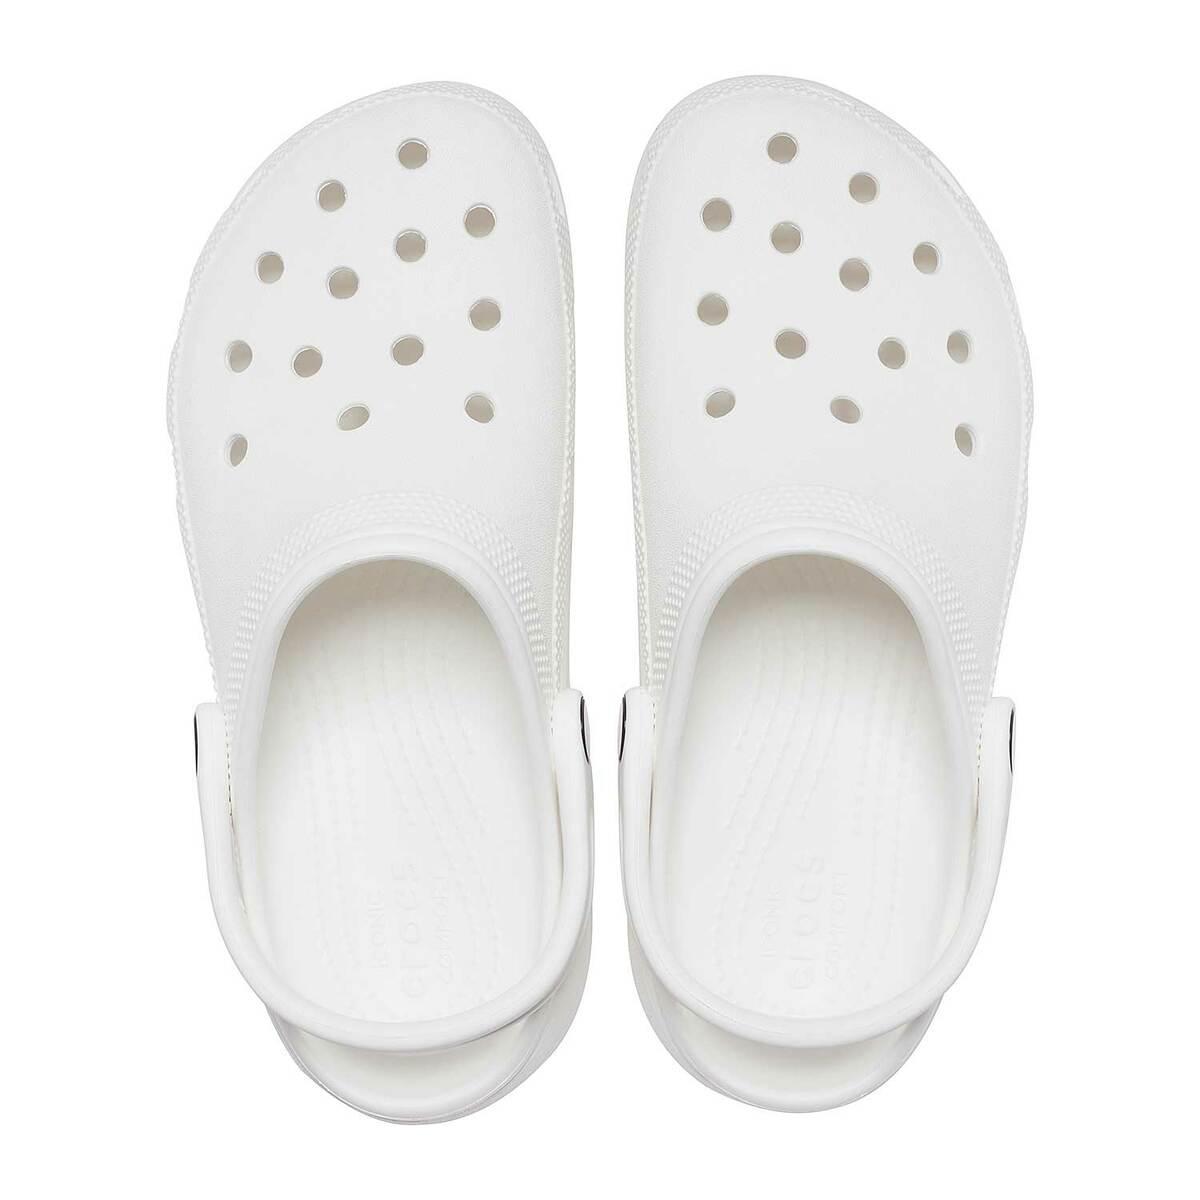 TZUYU x CROCS | Slippers, Shoes, Crocs